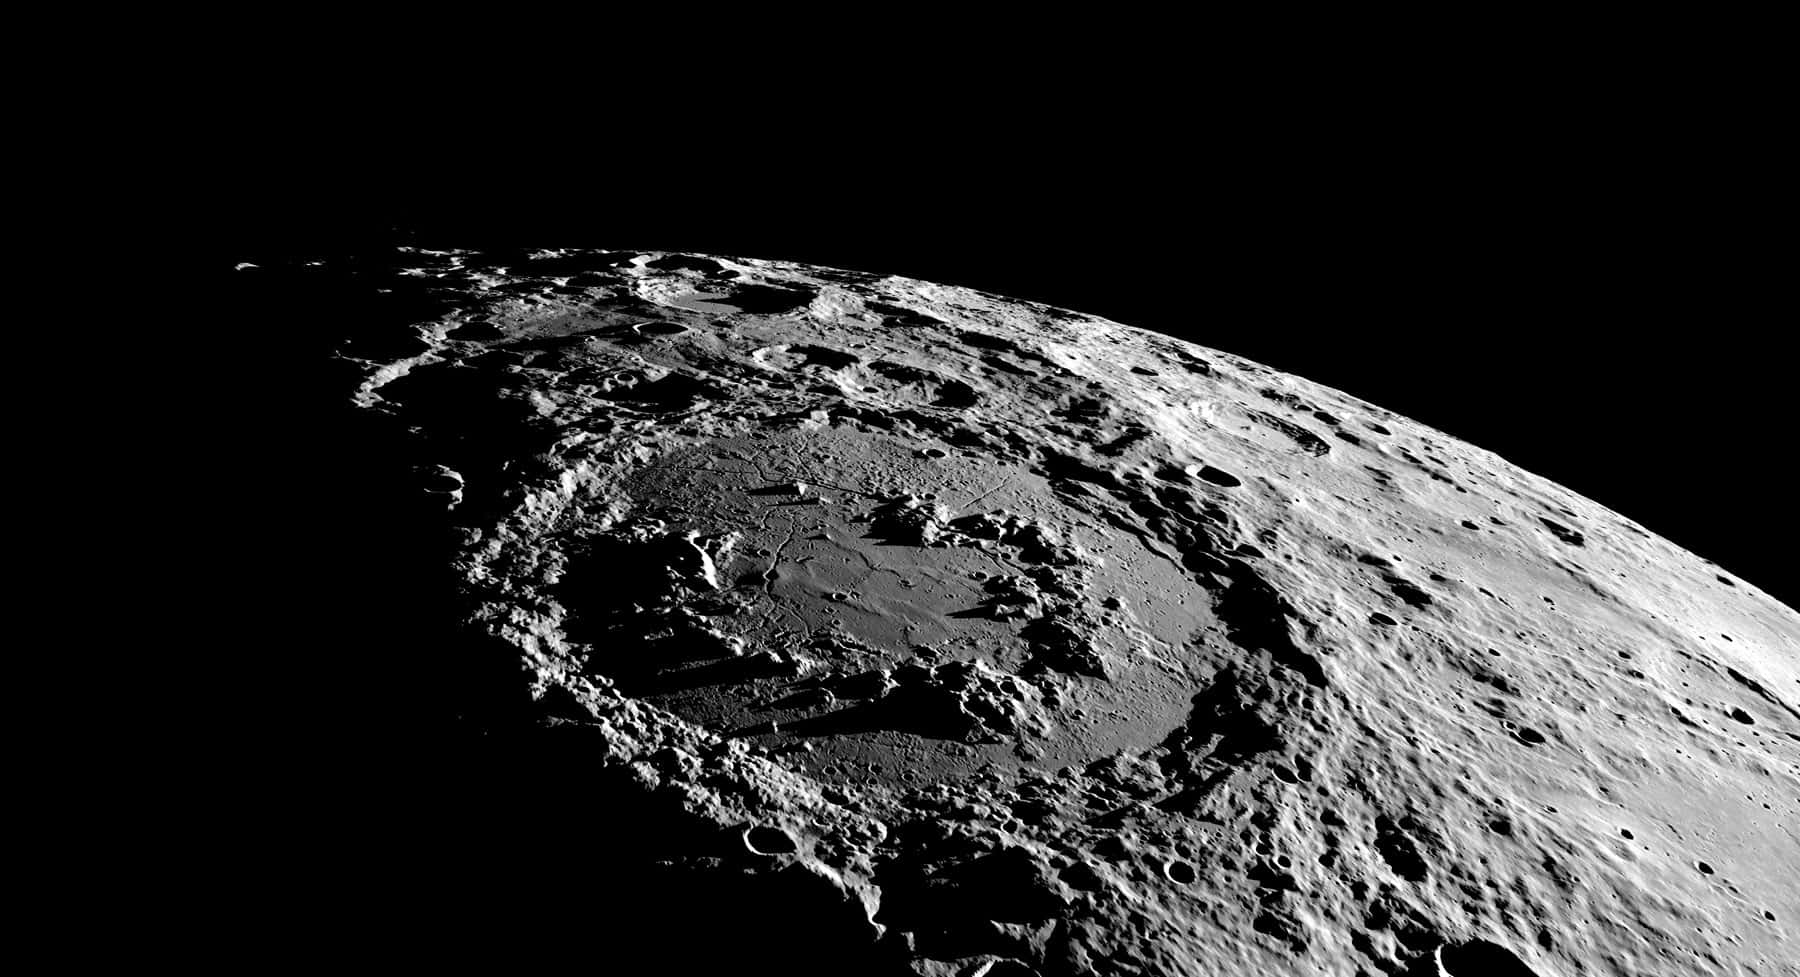 Imagendel Impacto De Meteoritos En La Superficie Lunar